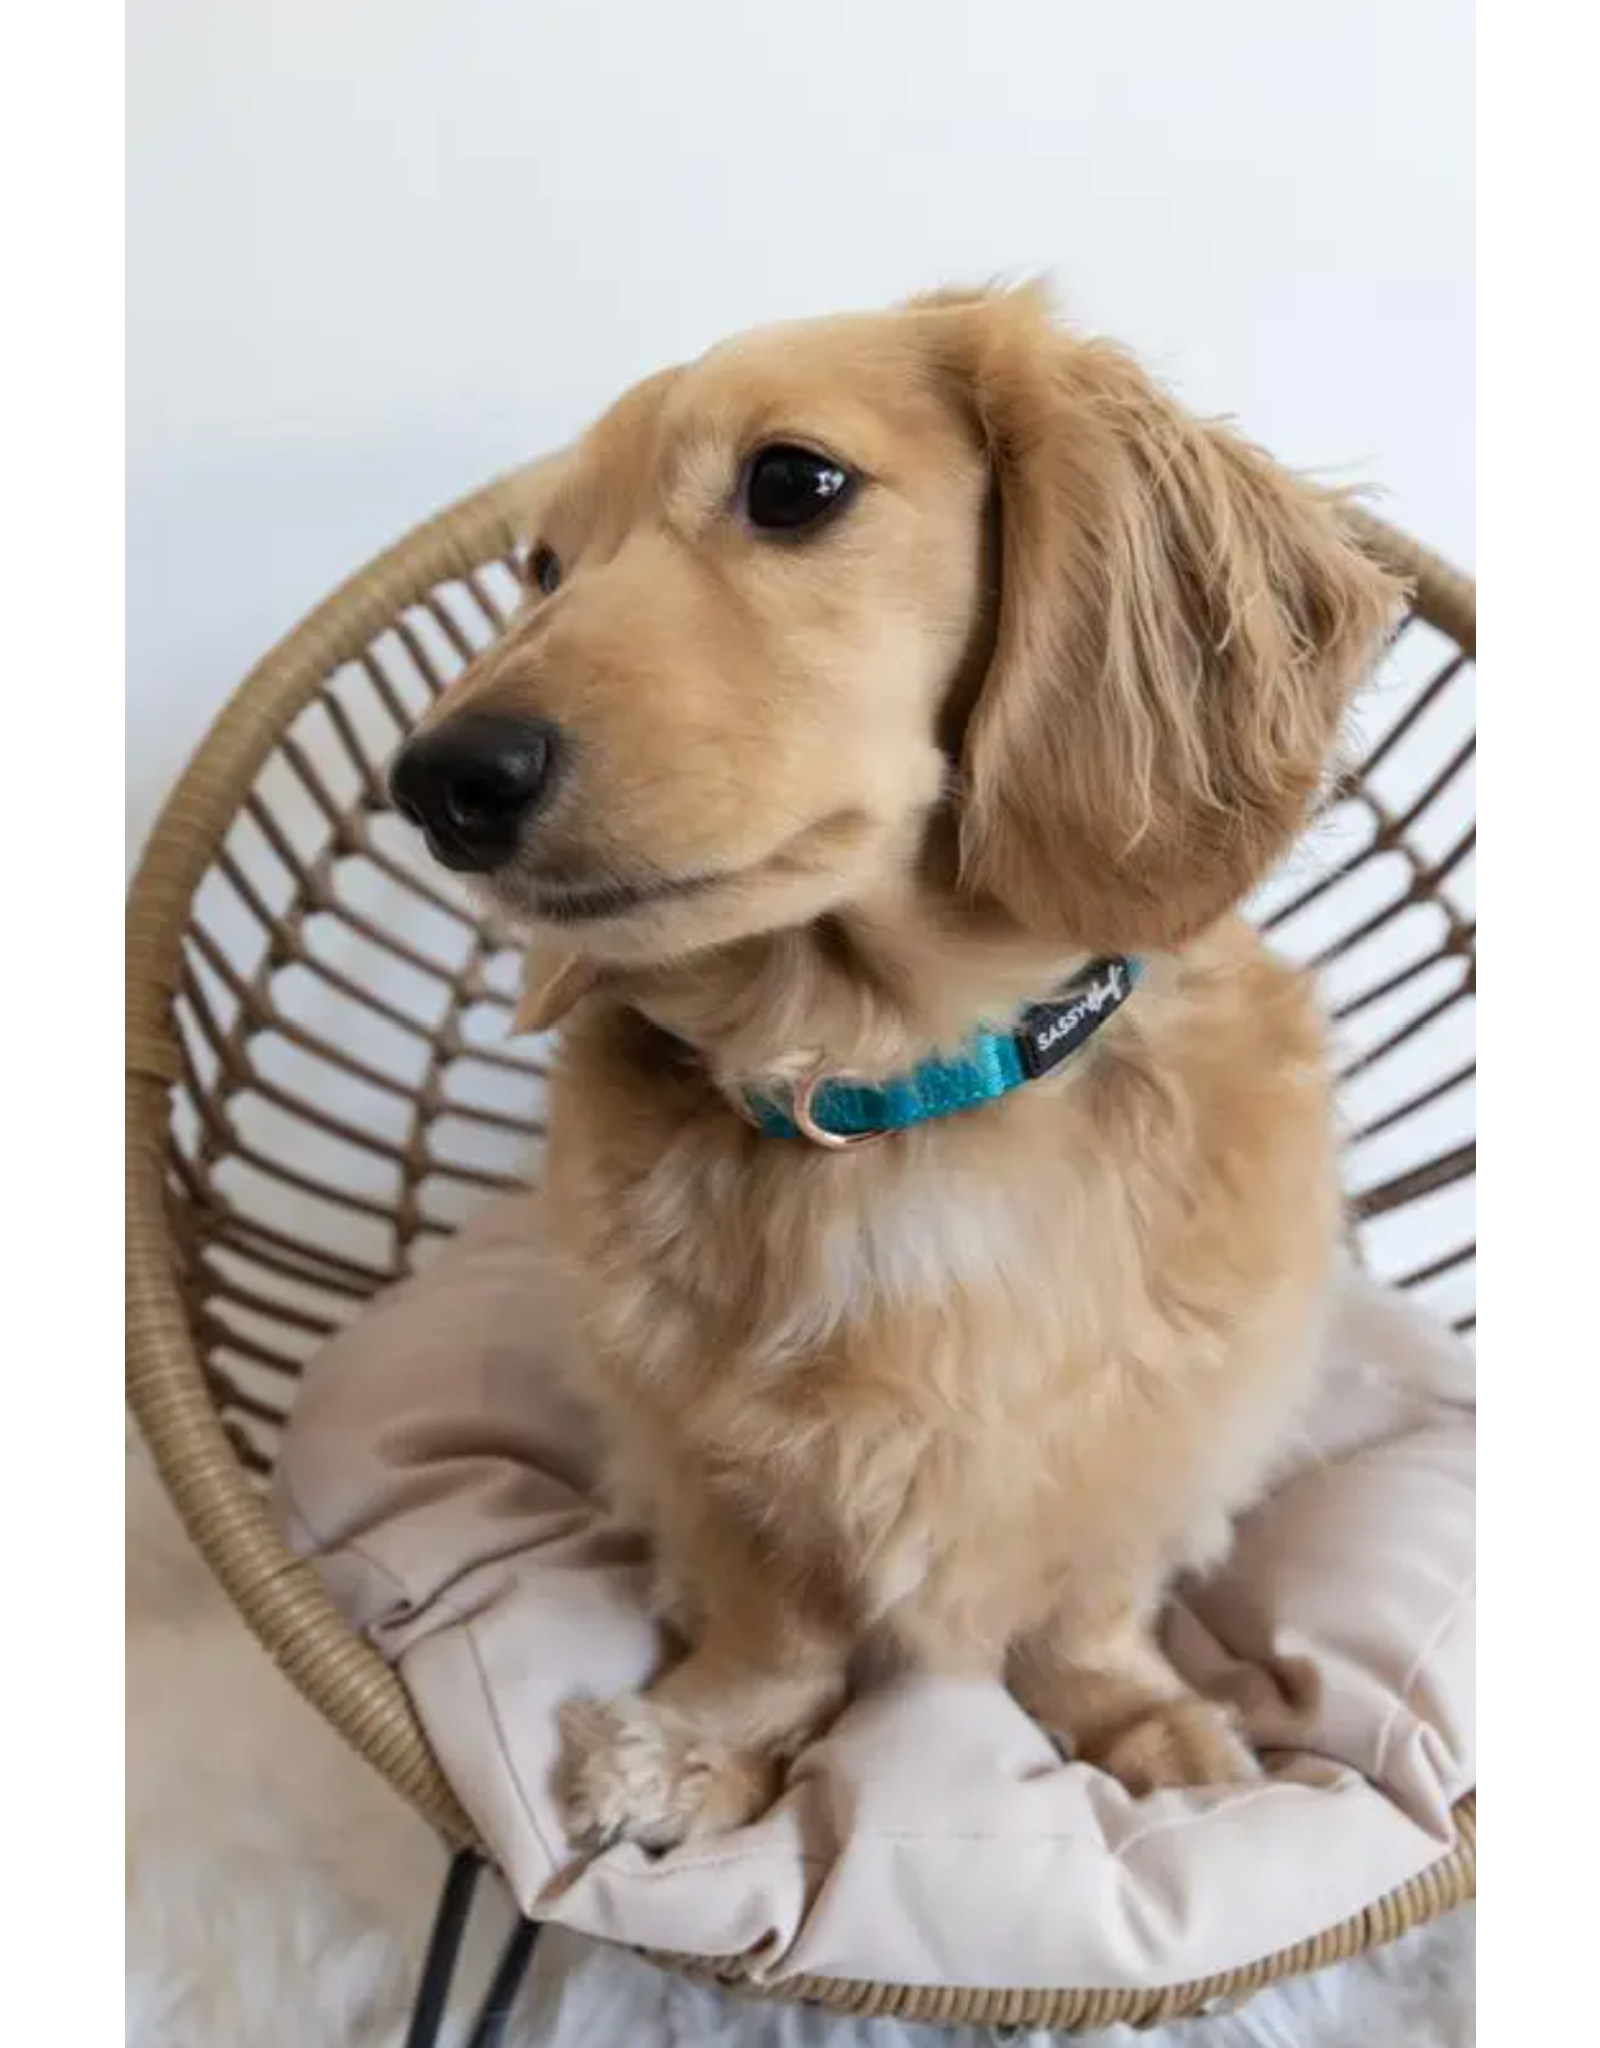 Sassy Woof 'Napa' Dog Collar